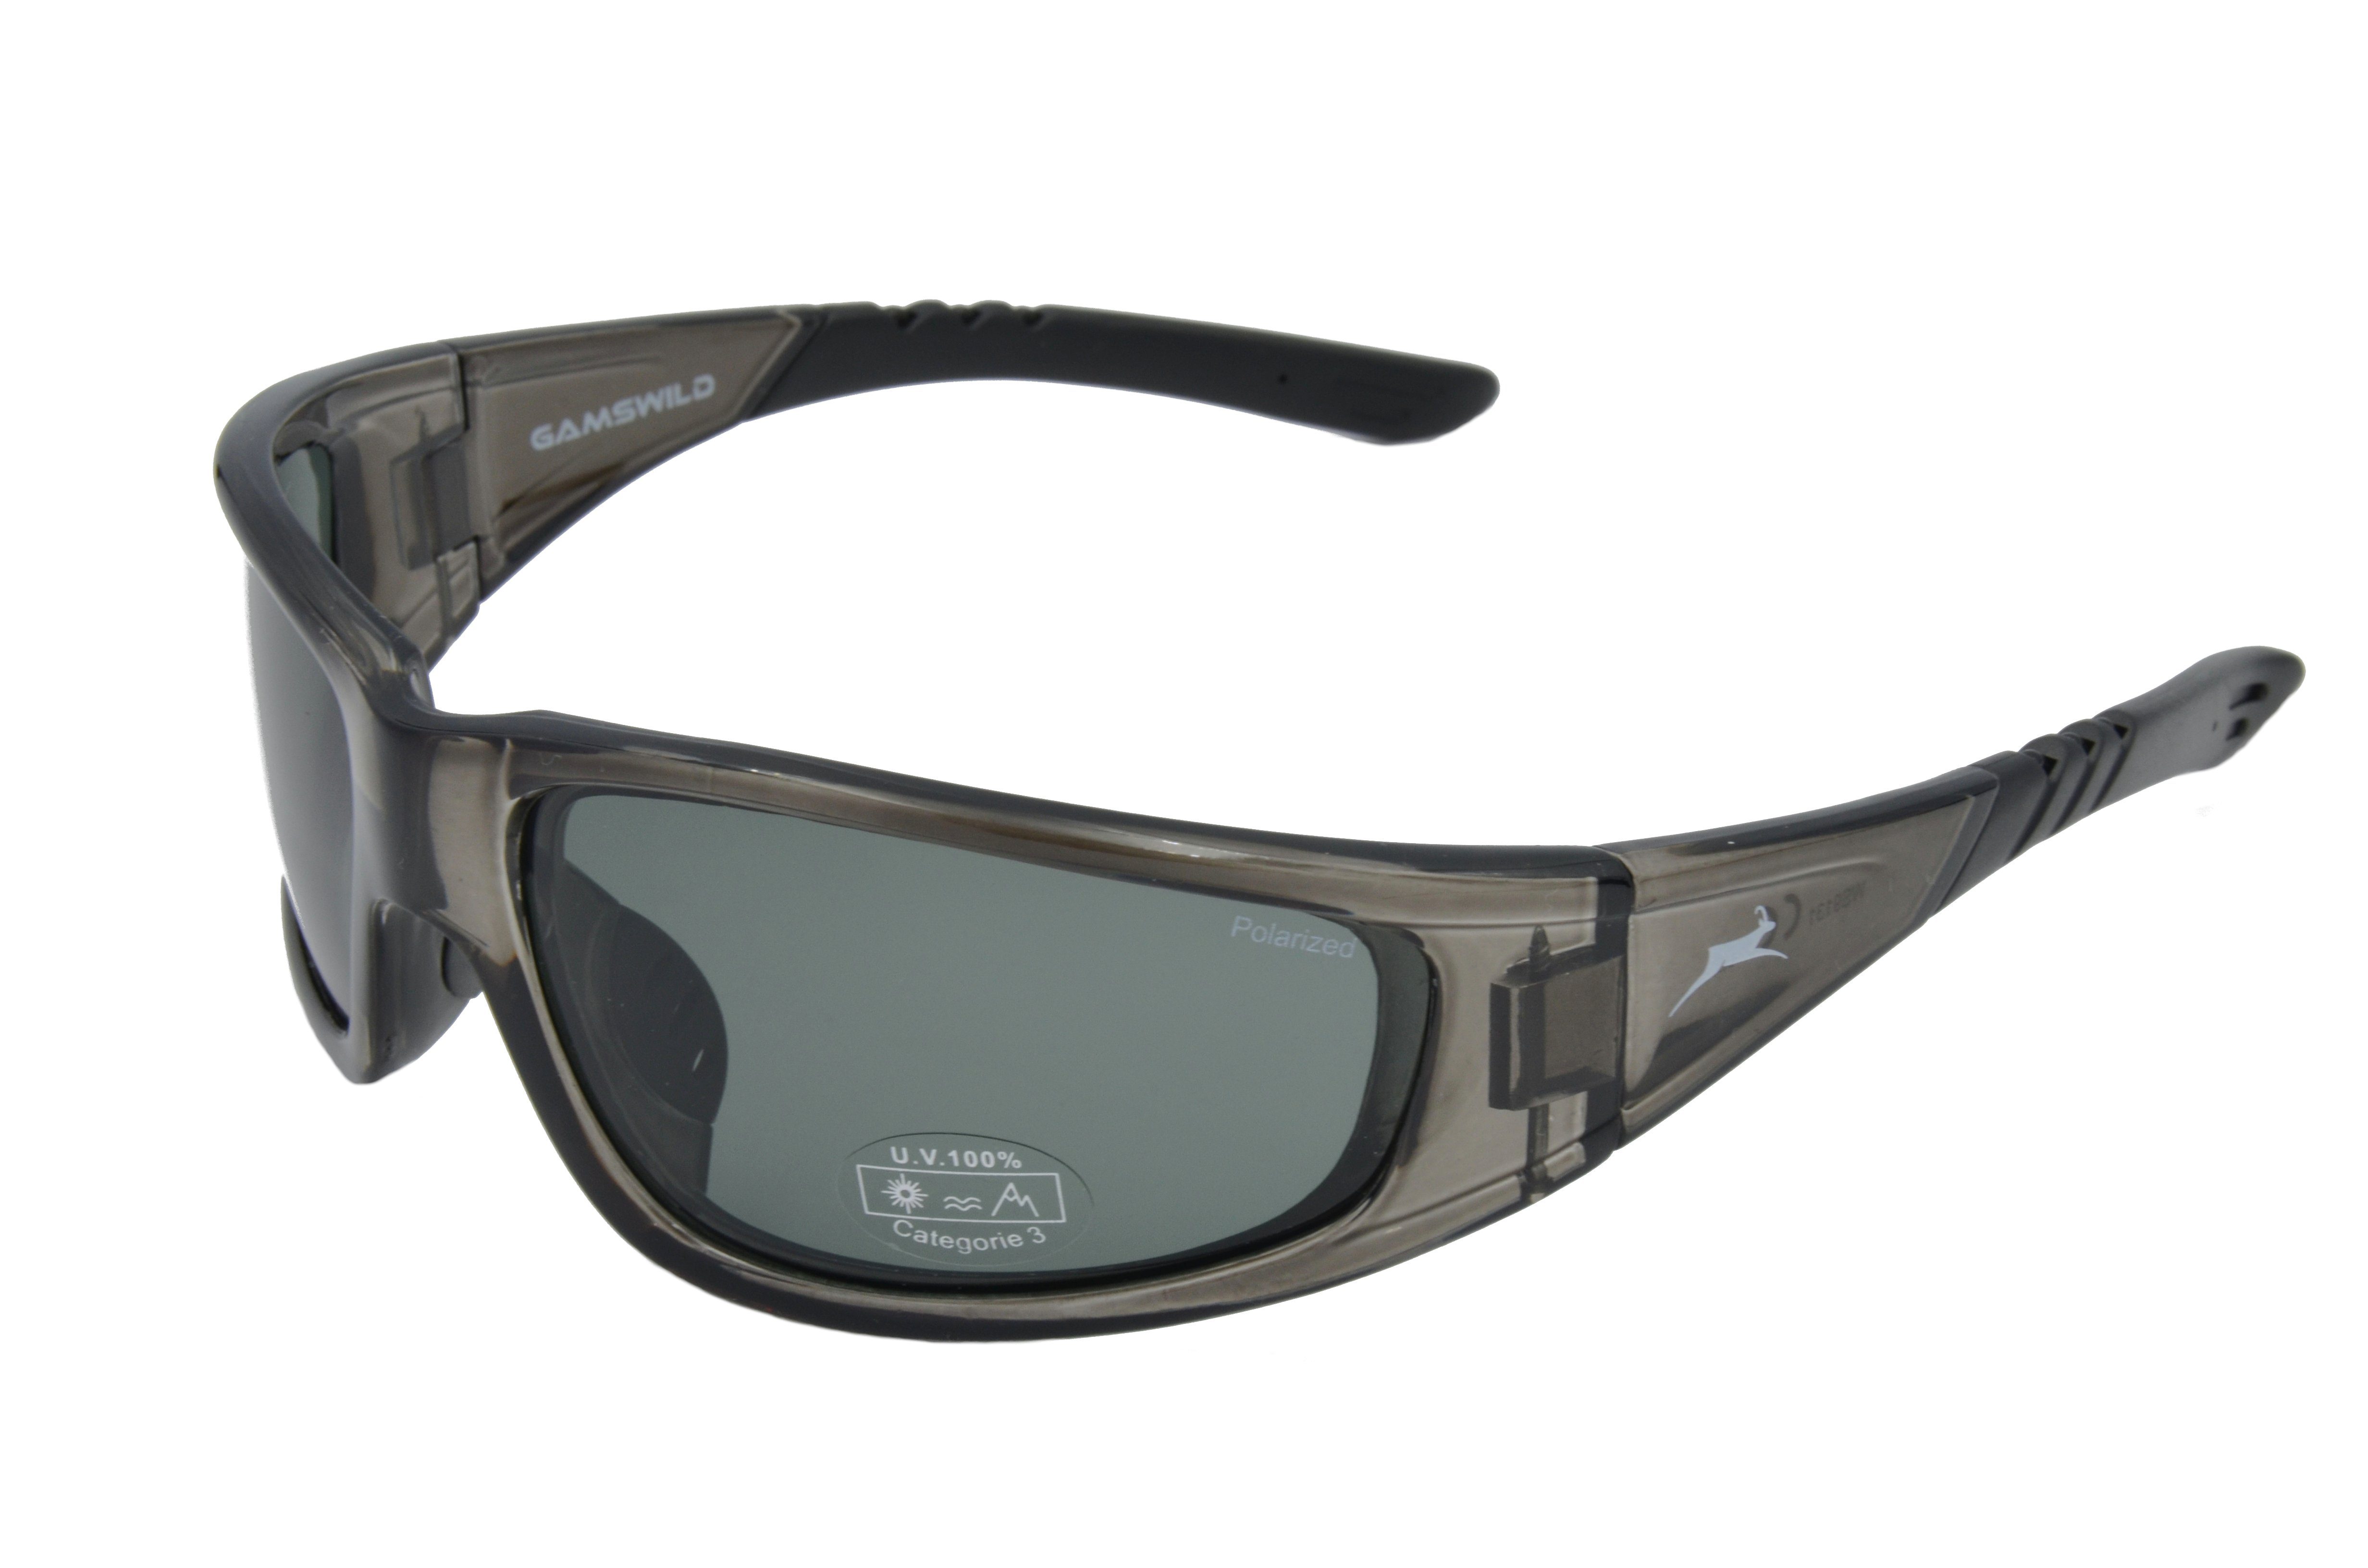 WS9131 Damen braun, Herren Skibrille Sportbrille polarisiert grau-transparent, Unisex, Gamswild Sonnenbrille Fahrradbrille